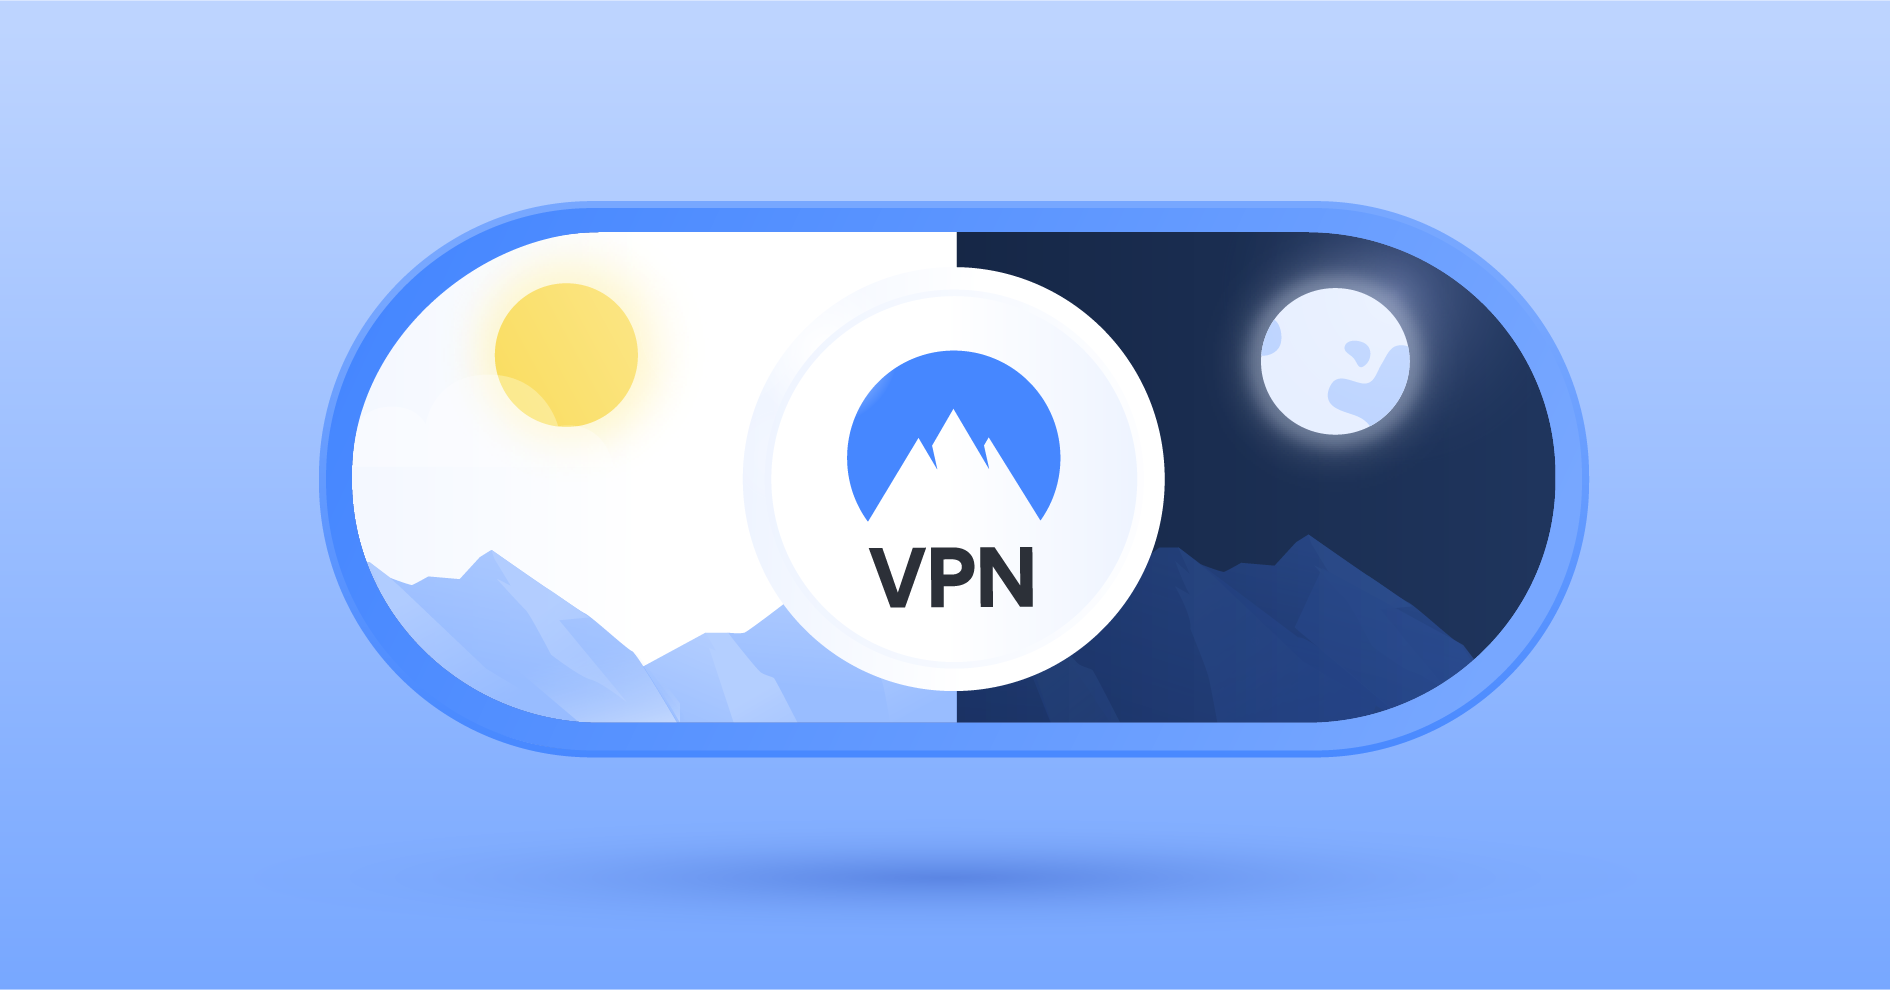 Darum ist ein VPN unbedingt notwendig